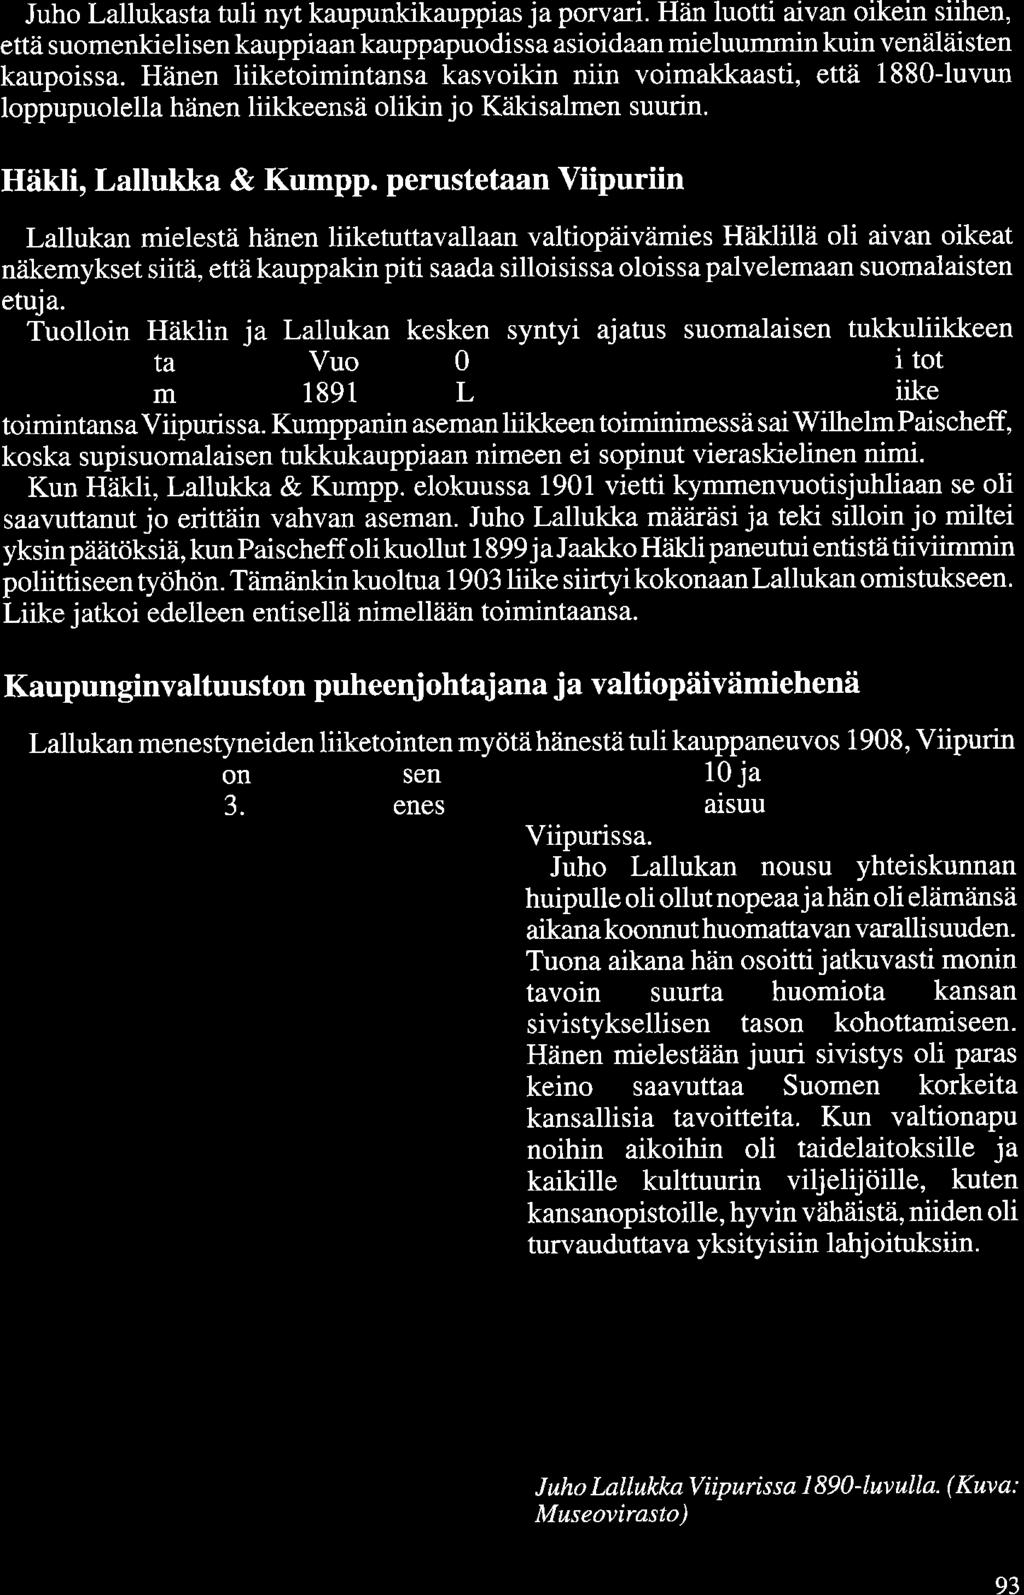 Juho Lallukasta tuli nyt kaupunkikauppias ja porvari. Hän luotti aivan oikein siihen, että suomenkielisen kauppiaan kauppapuodissa asioidaan mieluummin kuin venäläisten kaupoissa.